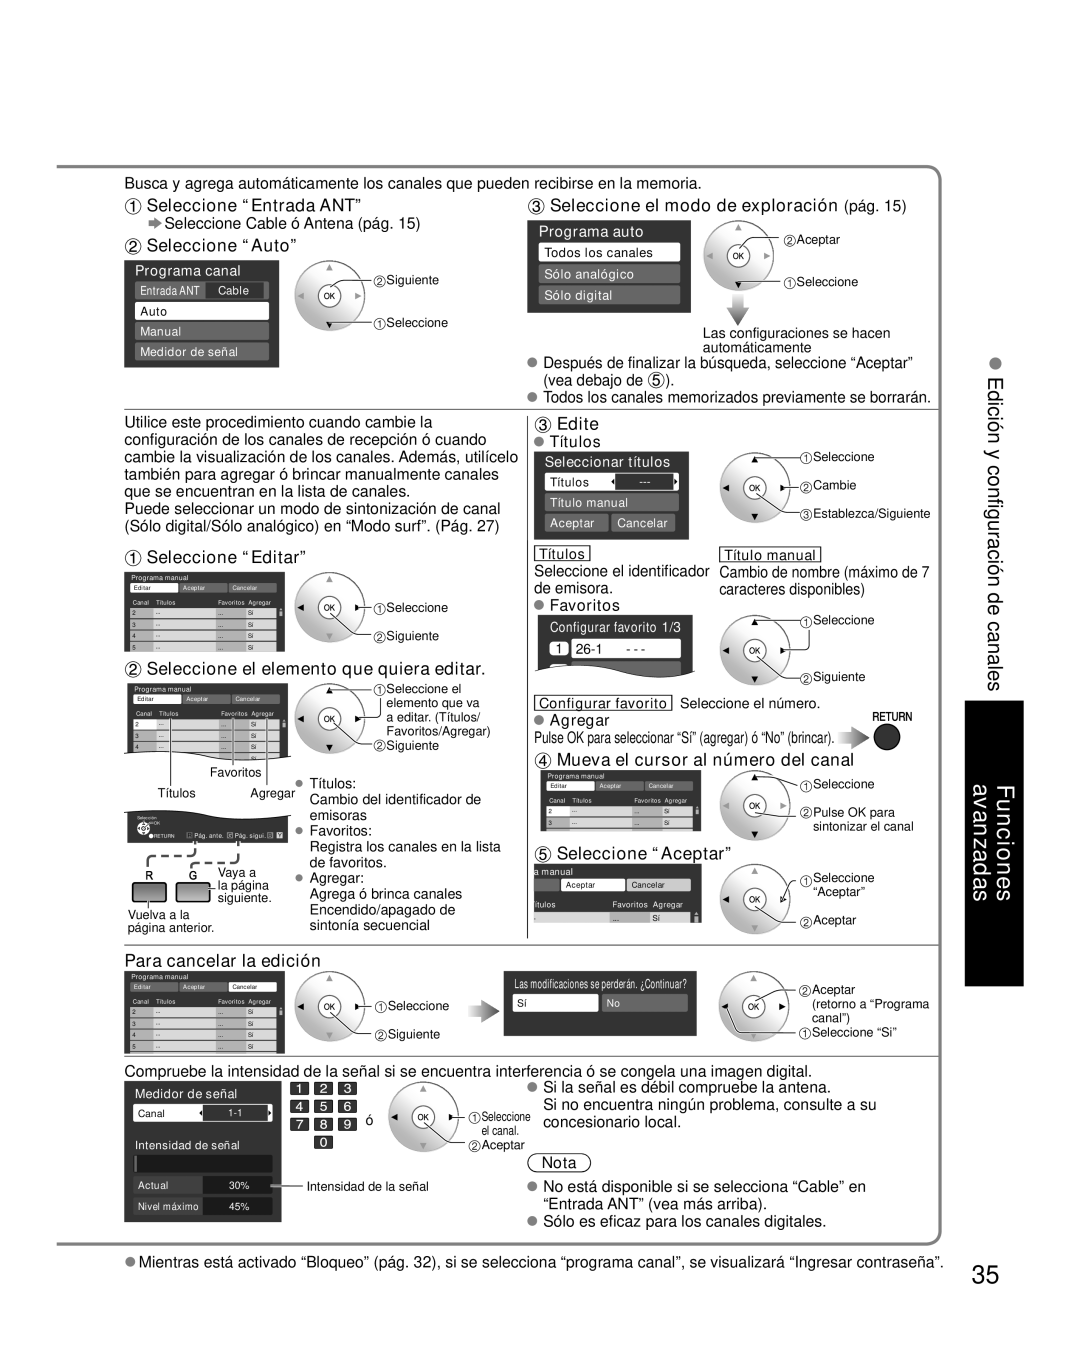 Panasonic TH-42PZ85U Seleccione “Auto”, Seleccione el modo de exploración pág, Seleccione “Editar”, Edite, Títulos, Nota 